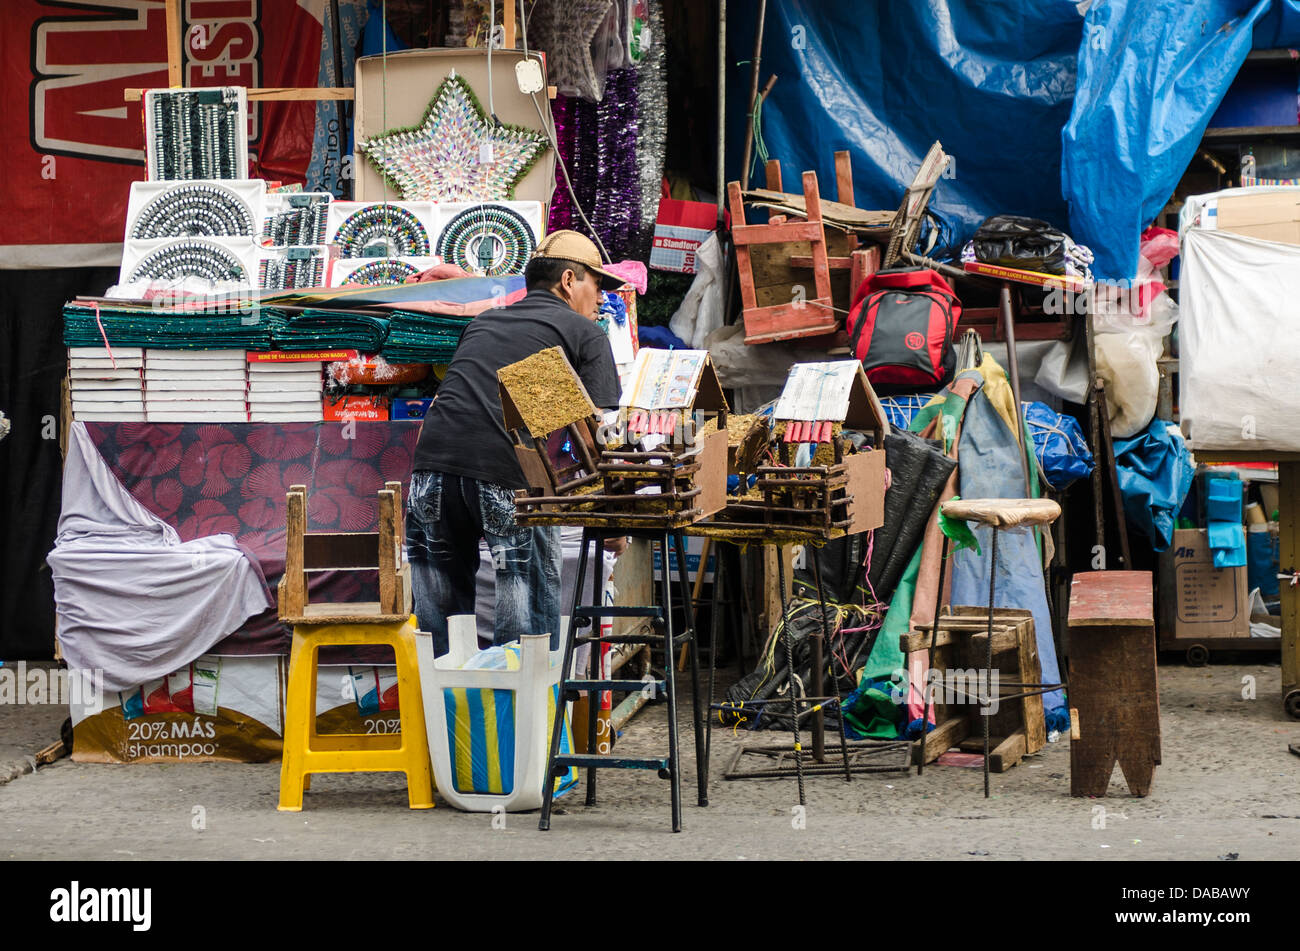 Trockengüter Möbelgeschäft stehen Stall Einkaufen in lokalen Zentralmarkt Marktplatz in Chiclayo, Peru. Stockfoto